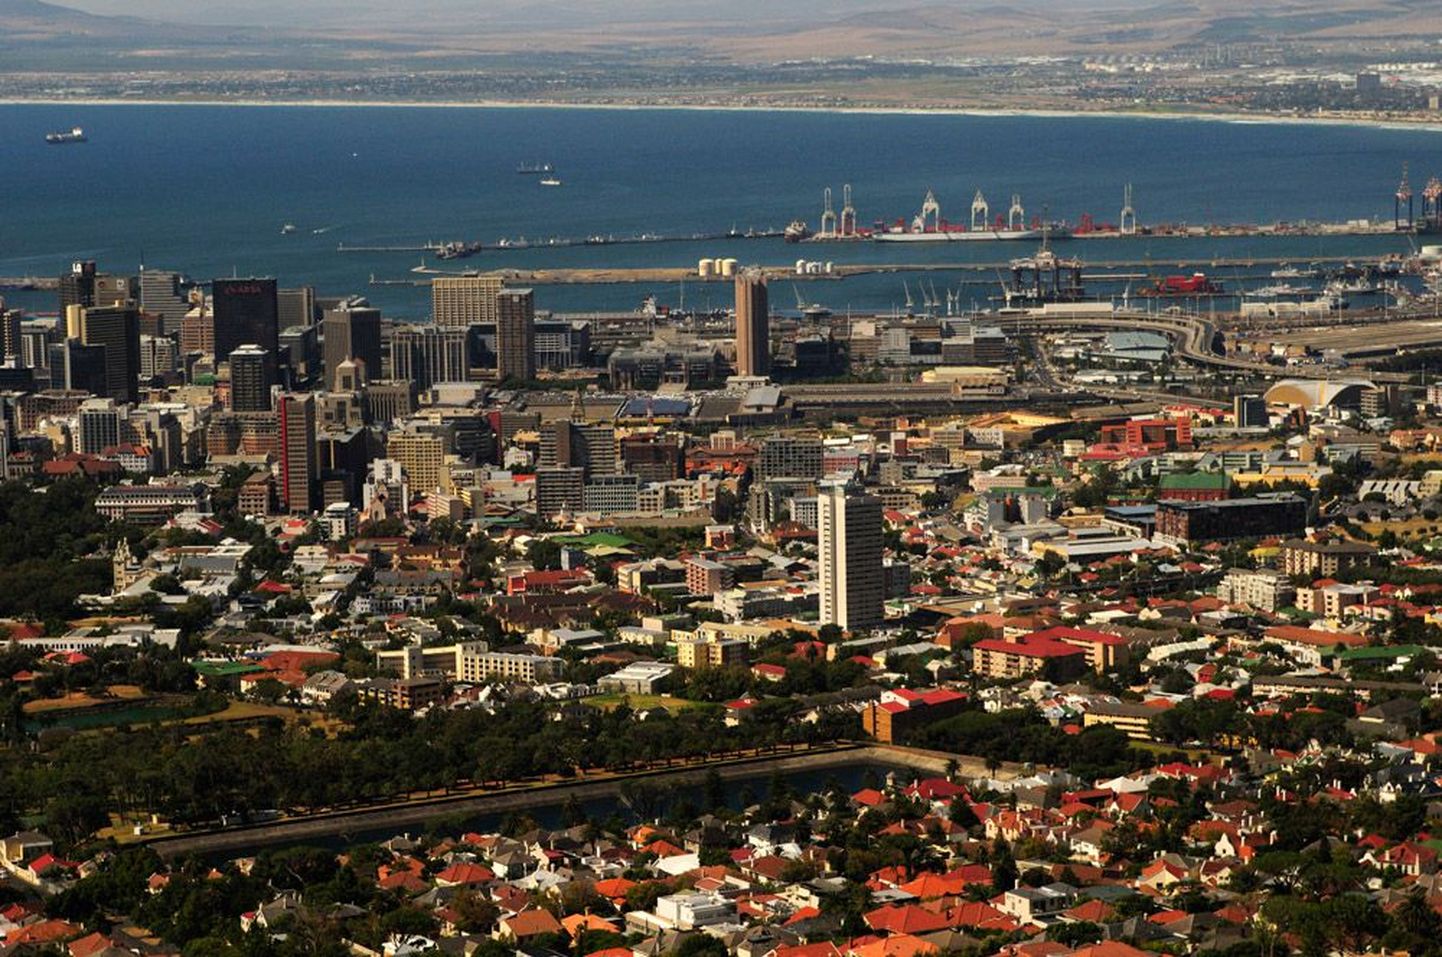 Vaade Laudmäelt Kaplinnale, kus elab kokku üle 3 miljoni elaniku. Riigi parlament asub Kaplinnas ja seepärast nimetatakse Kaplinna Lõuna-Aafrika seadusandlikuks pealinnaks.